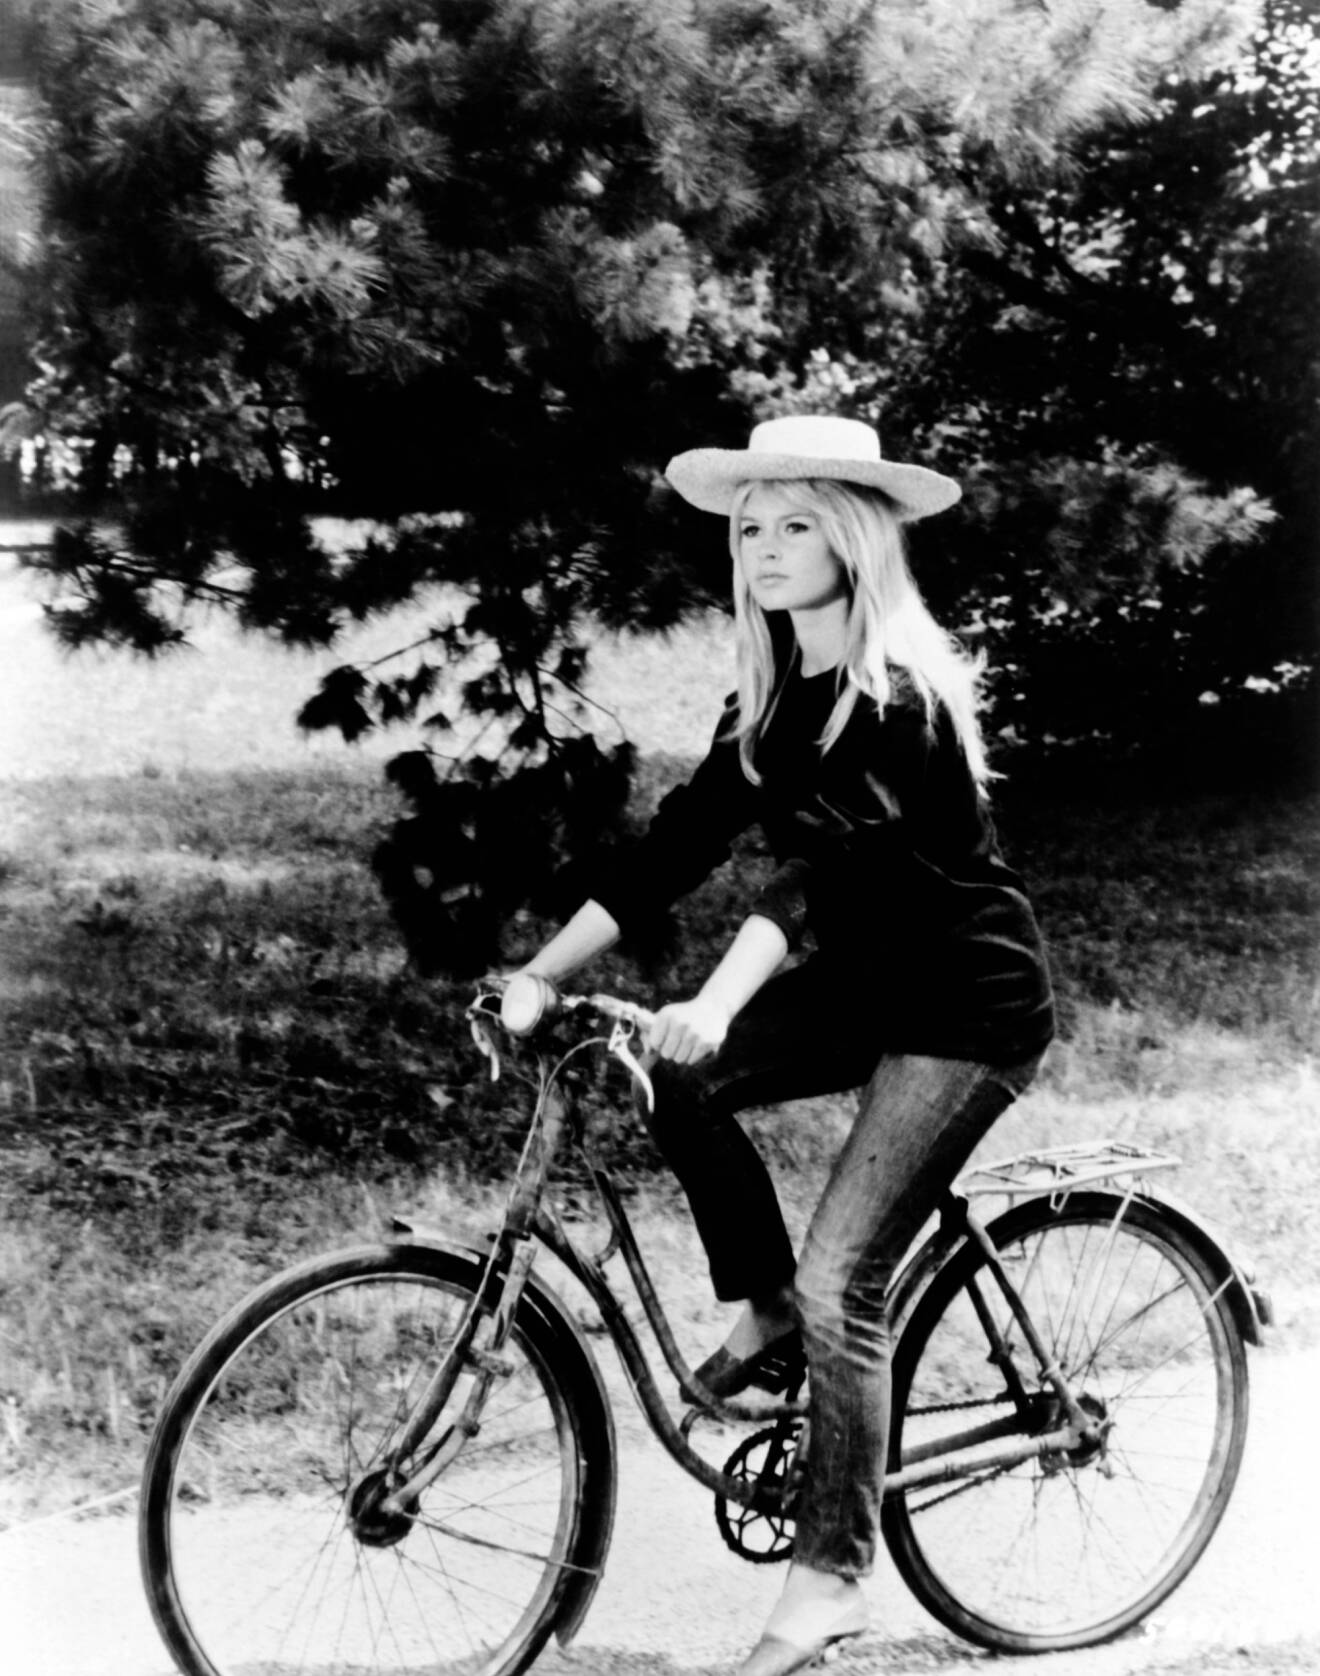 brigitte bardot på cykel i hatt.